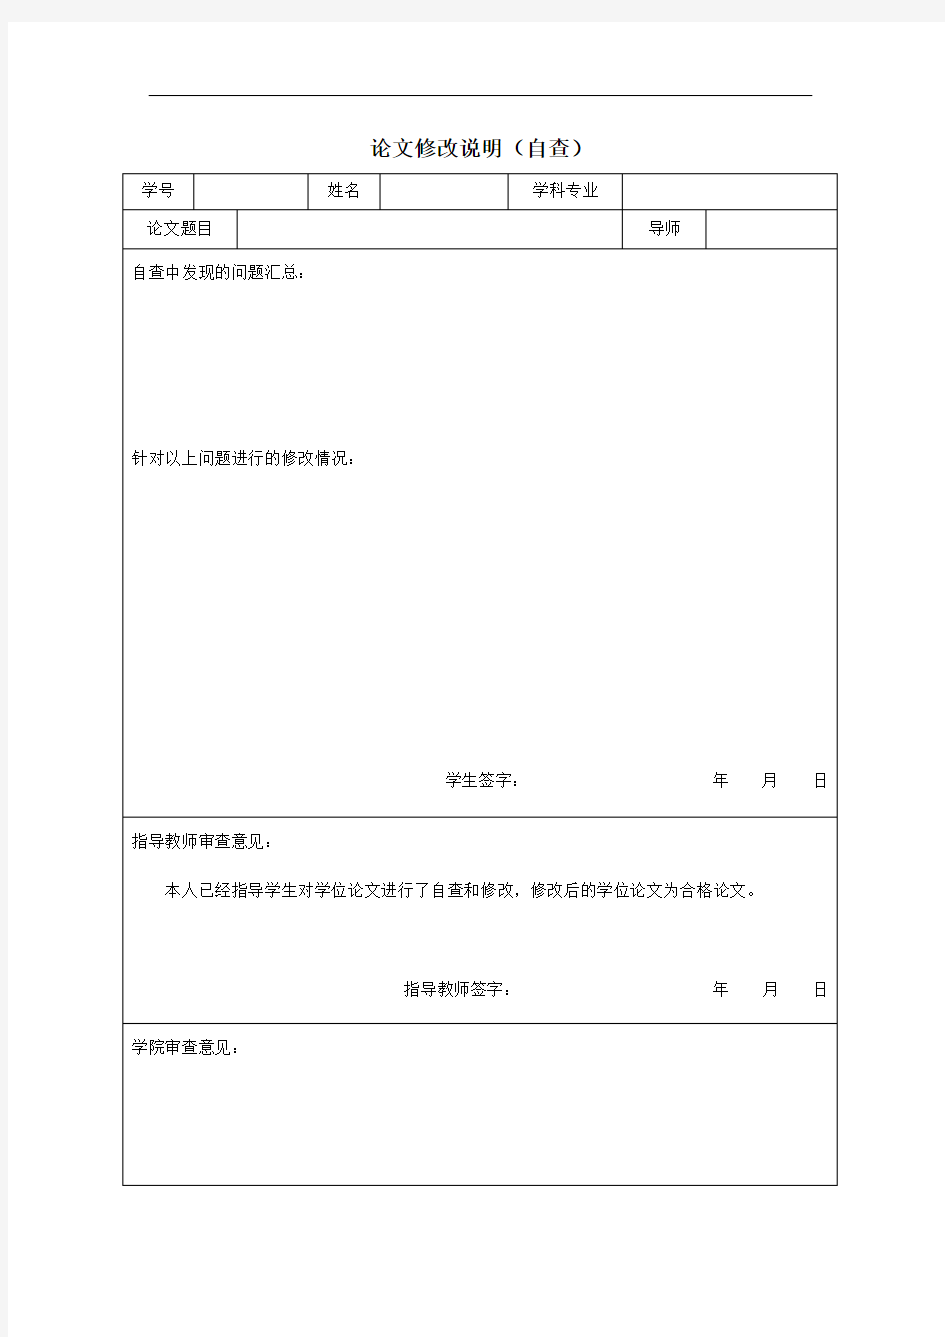 天津大学毕业论文  论文修改说明(自查)